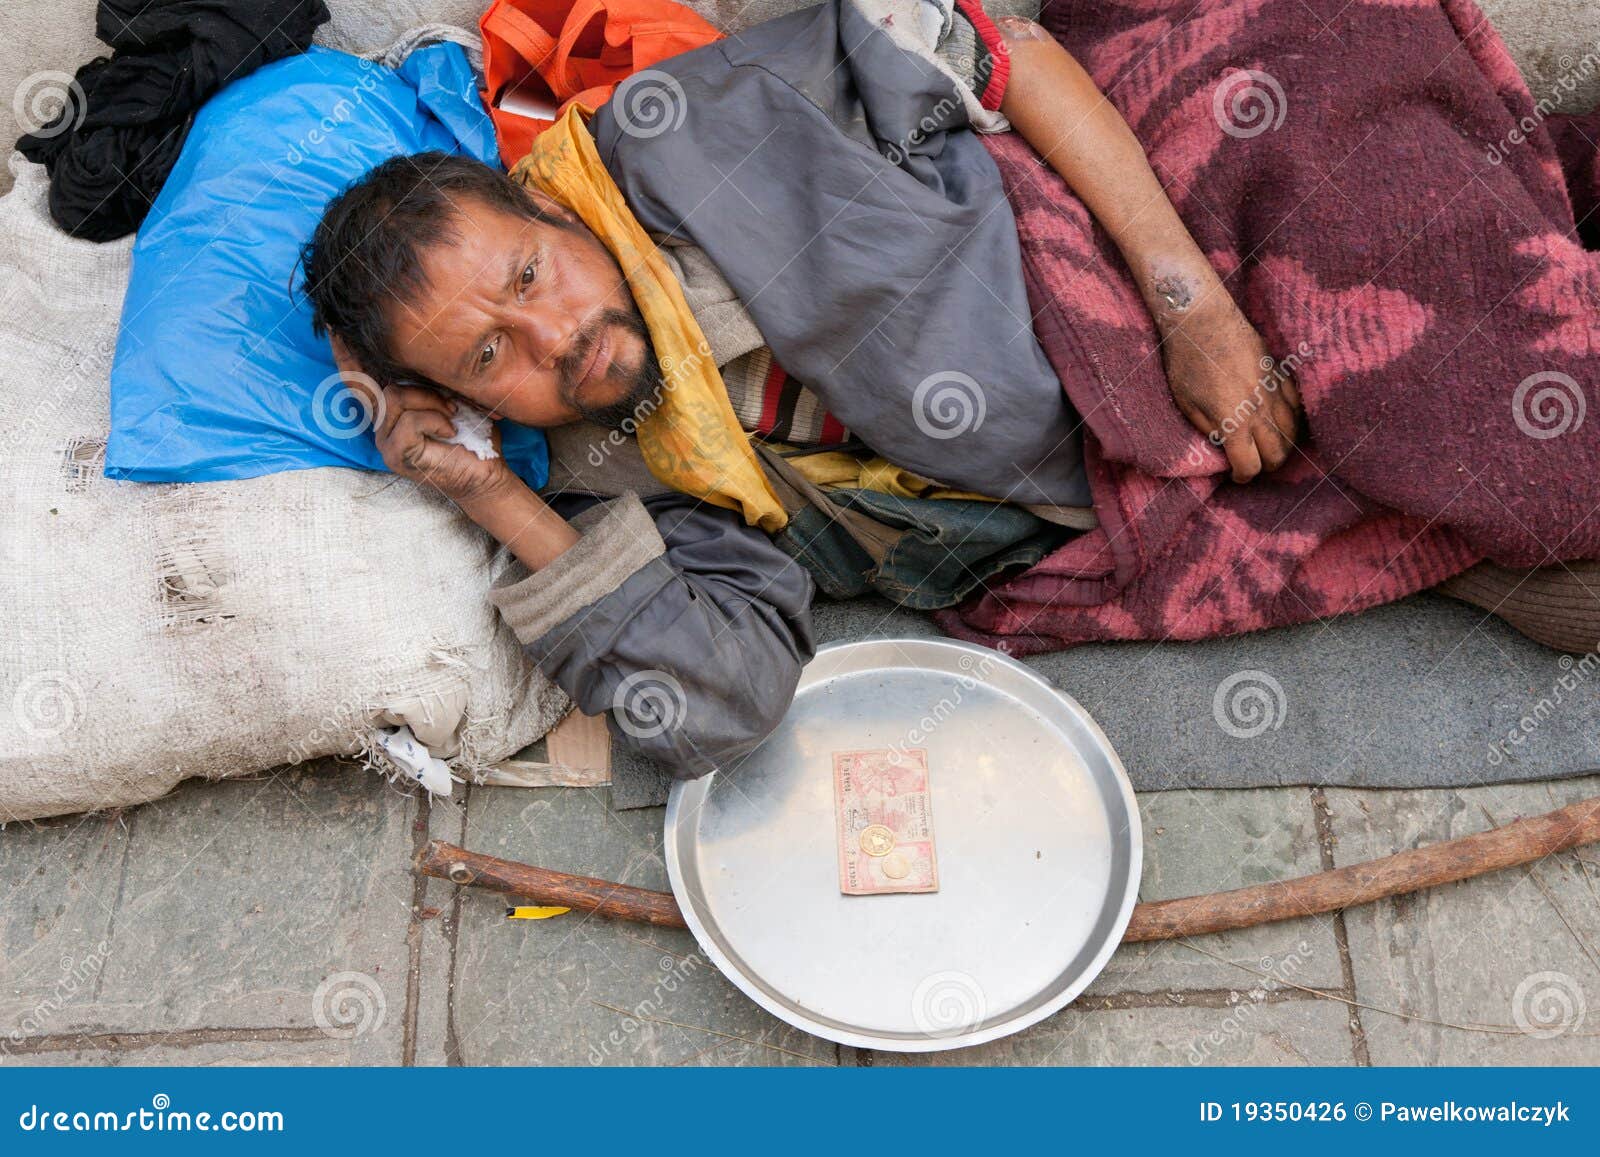 无家可归的v 编辑类图片. 图片 包括有 问题, 饥饿, 成人, 婴孩, 母性, 街市, 公民, 卑鄙, 位于 - 455750